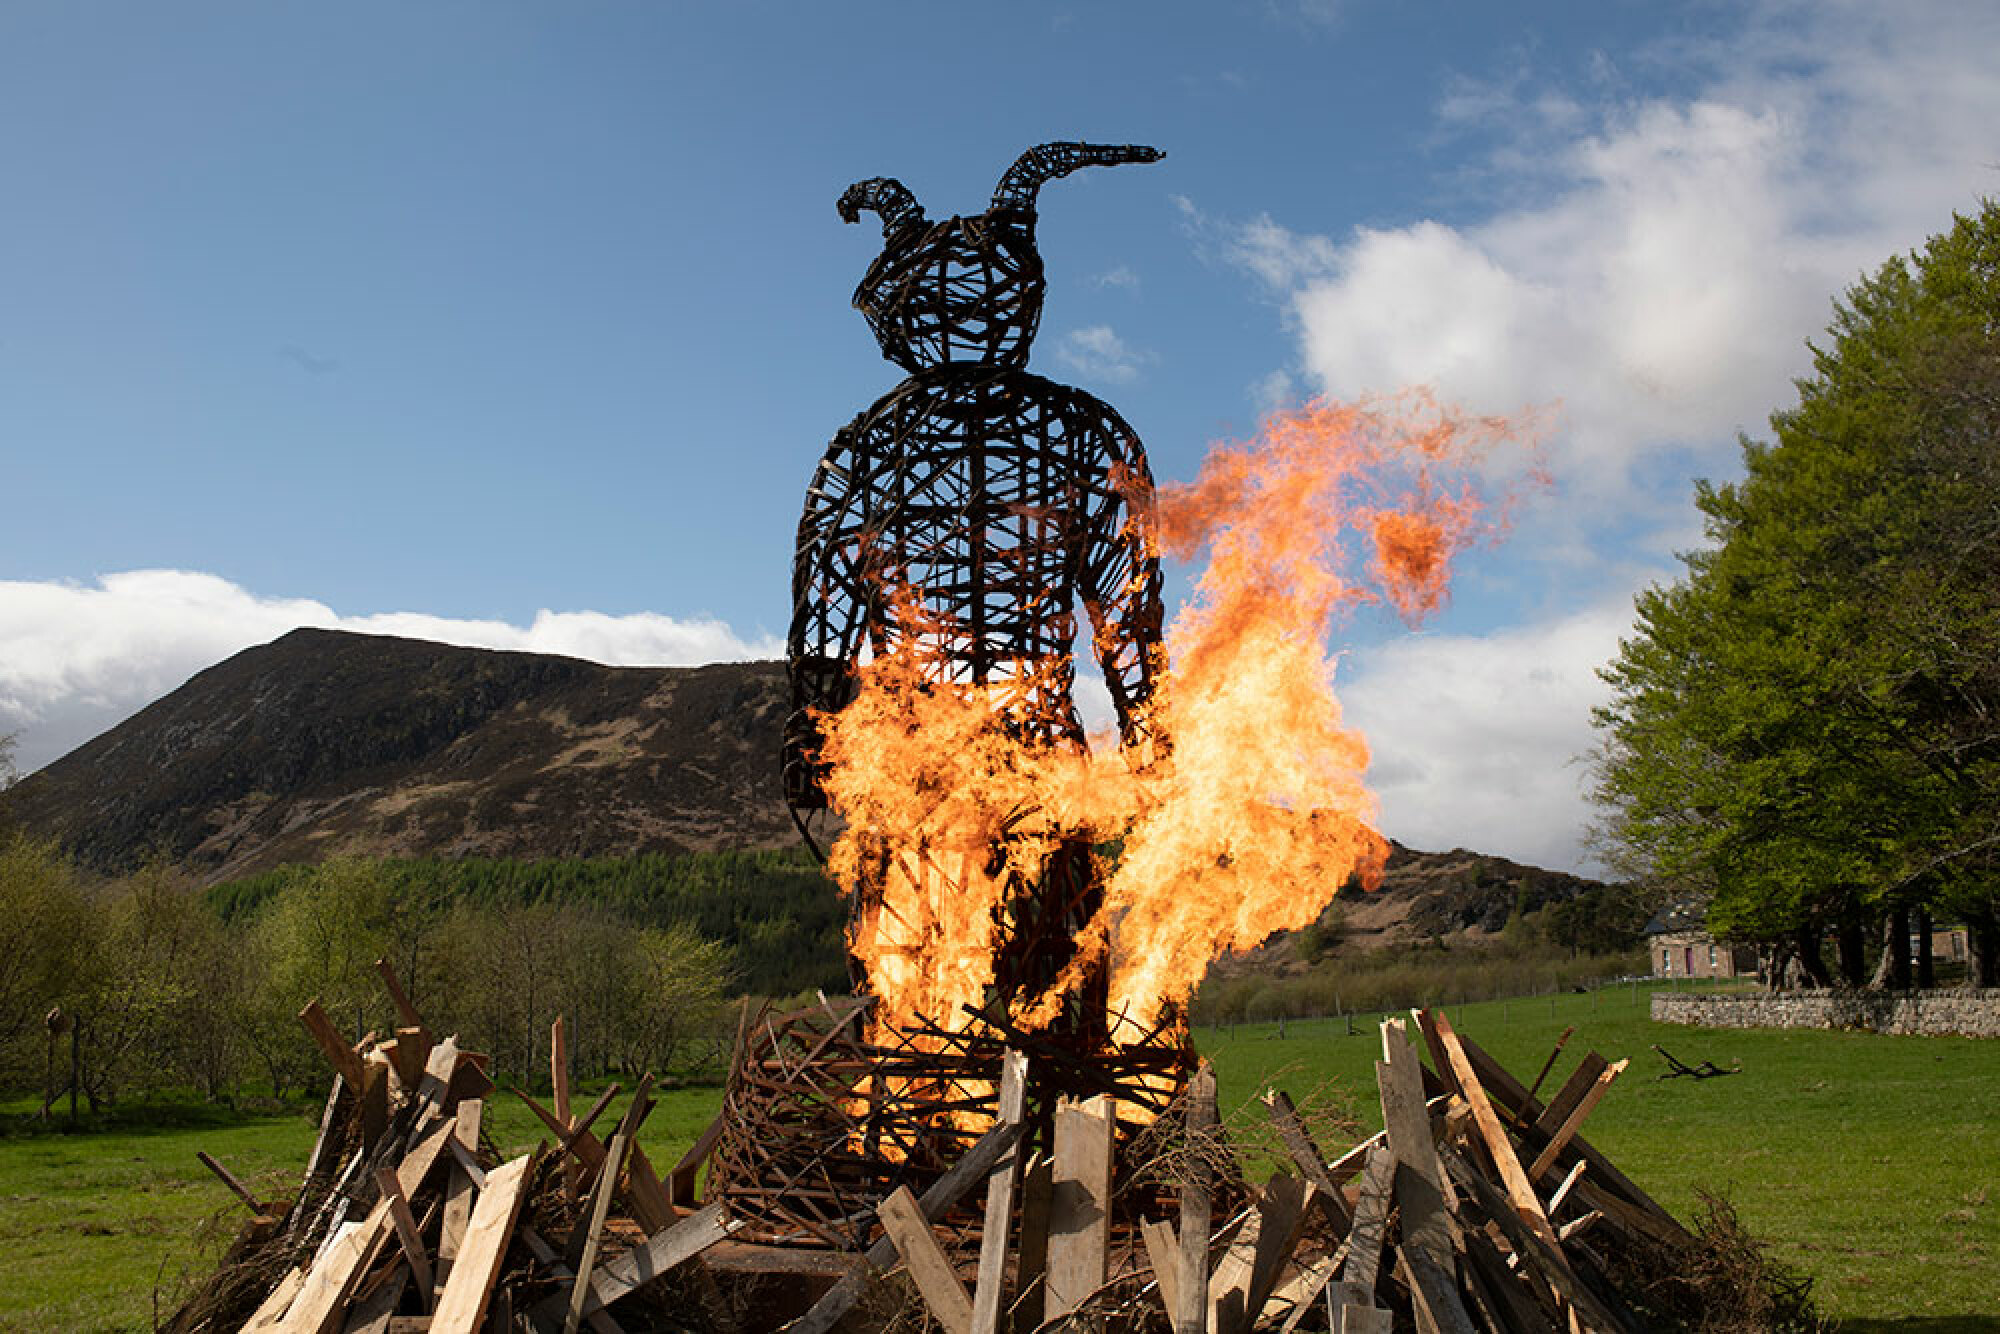 Une structure en bois en forme de lapin géant brûle sur un feu de joie à l'extérieur.